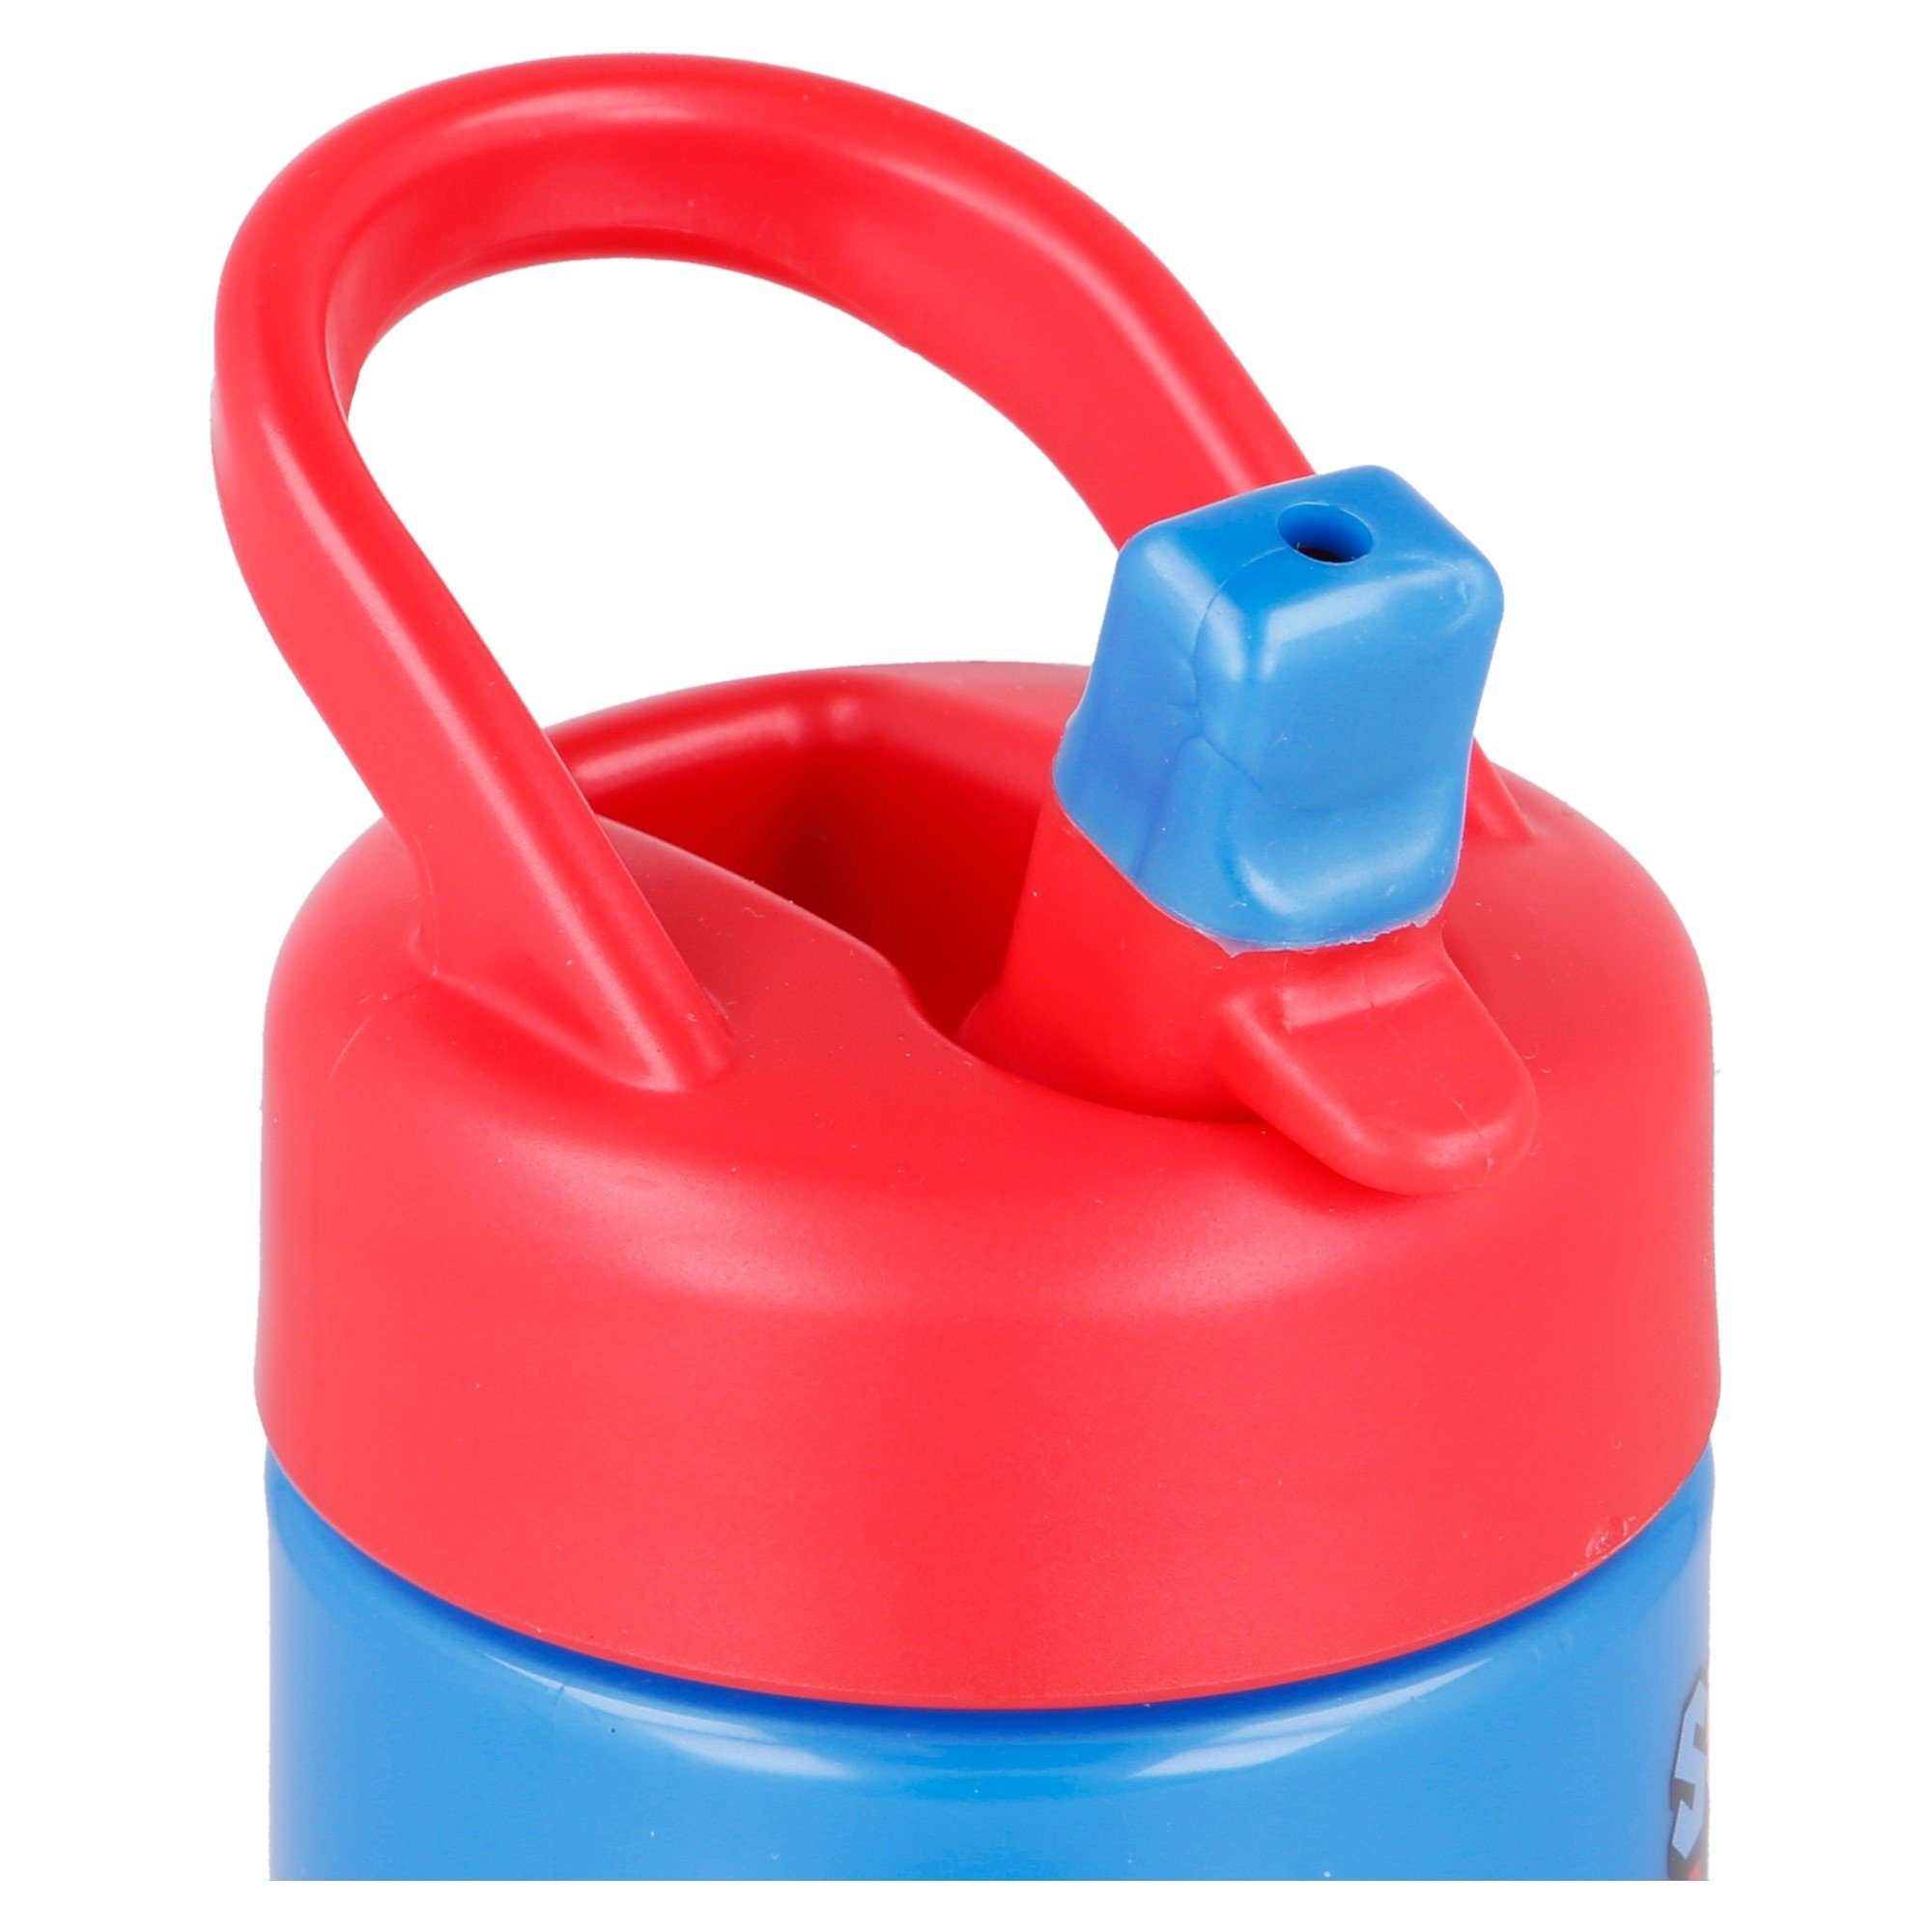 Toady Yoshi Wasserflasche, 410 Luigi Flasche Mario Super Super Kinder ml Mario Trinkflasche